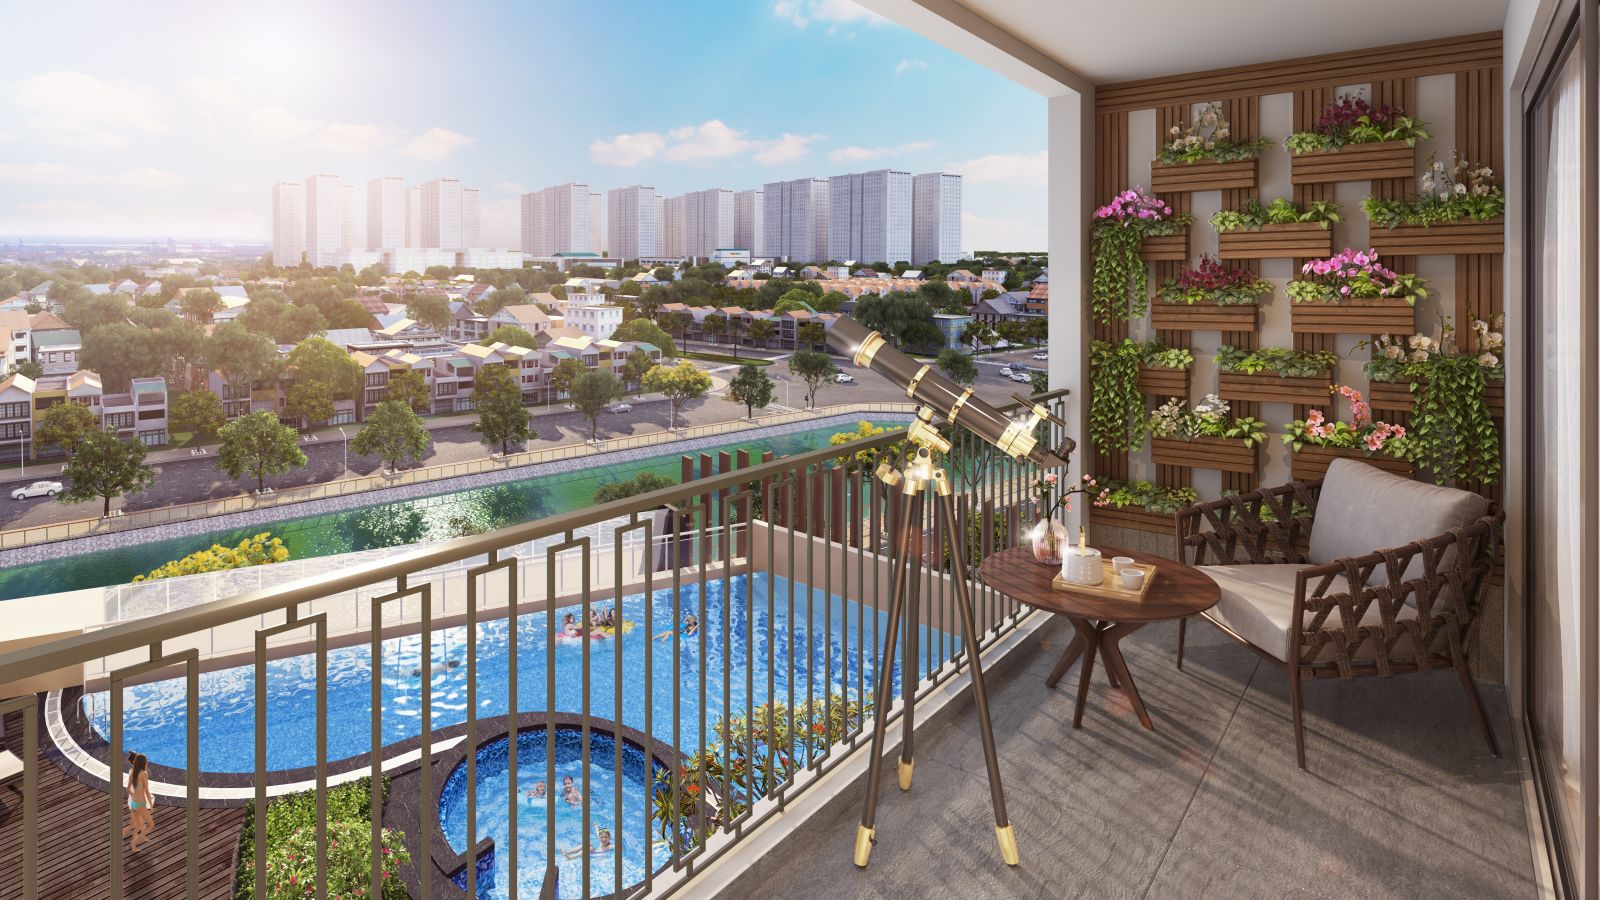 Hinode City - dự án hiếm hoi tại Hà Nội bàn giao hoàn thiện tới cả ban công căn hộ.